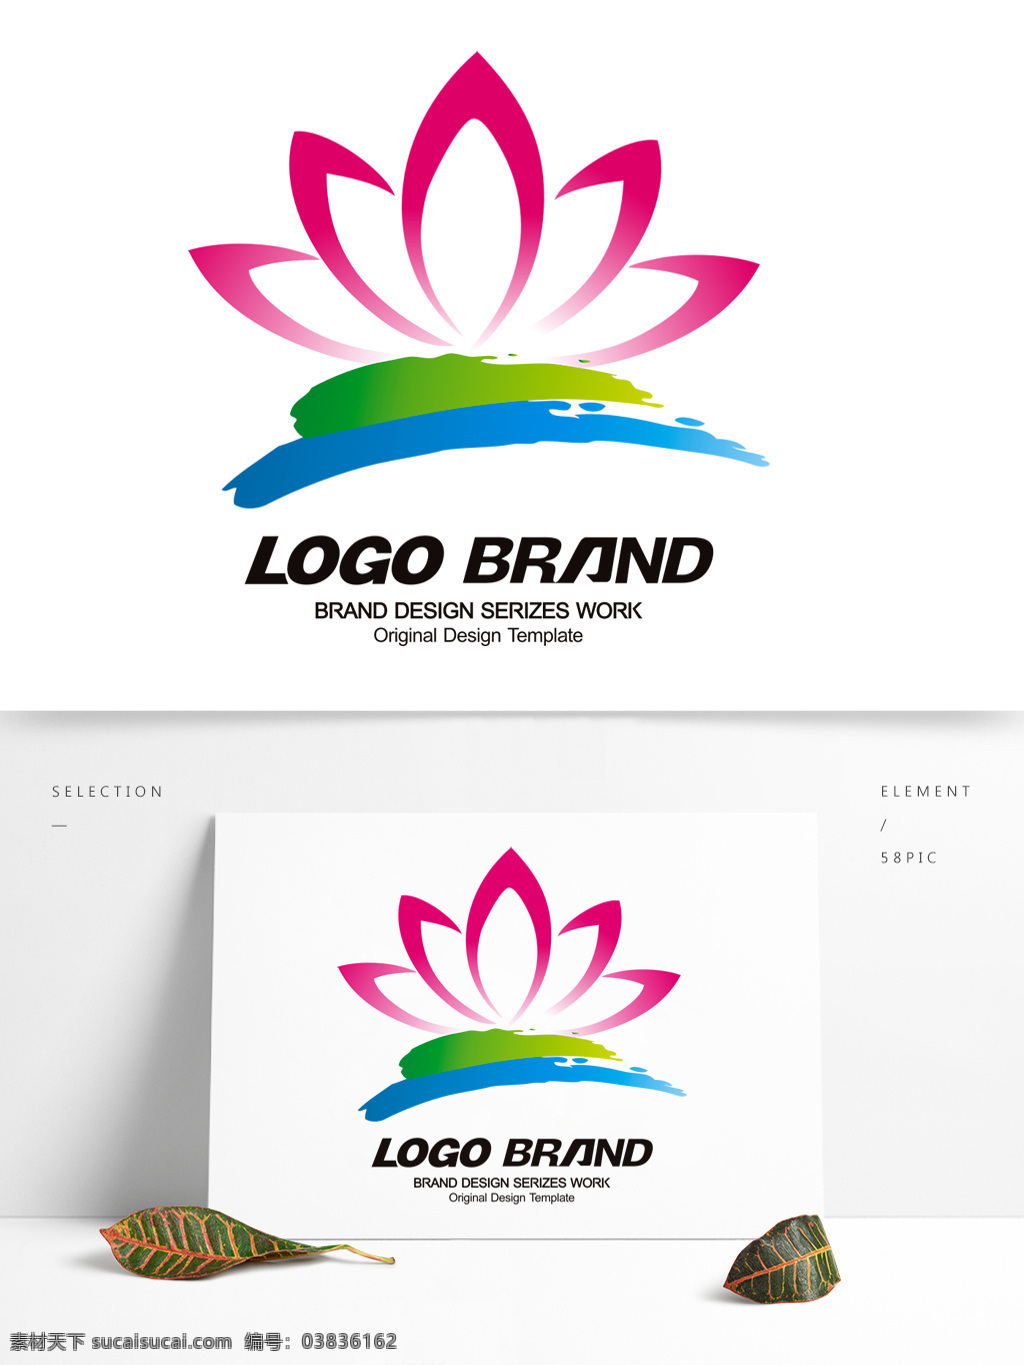 矢量 中国 风 荷花 logo 公司 标志设计 荷花标志设计 公司标志设计 企业 会徽标志设计 企业标志设计